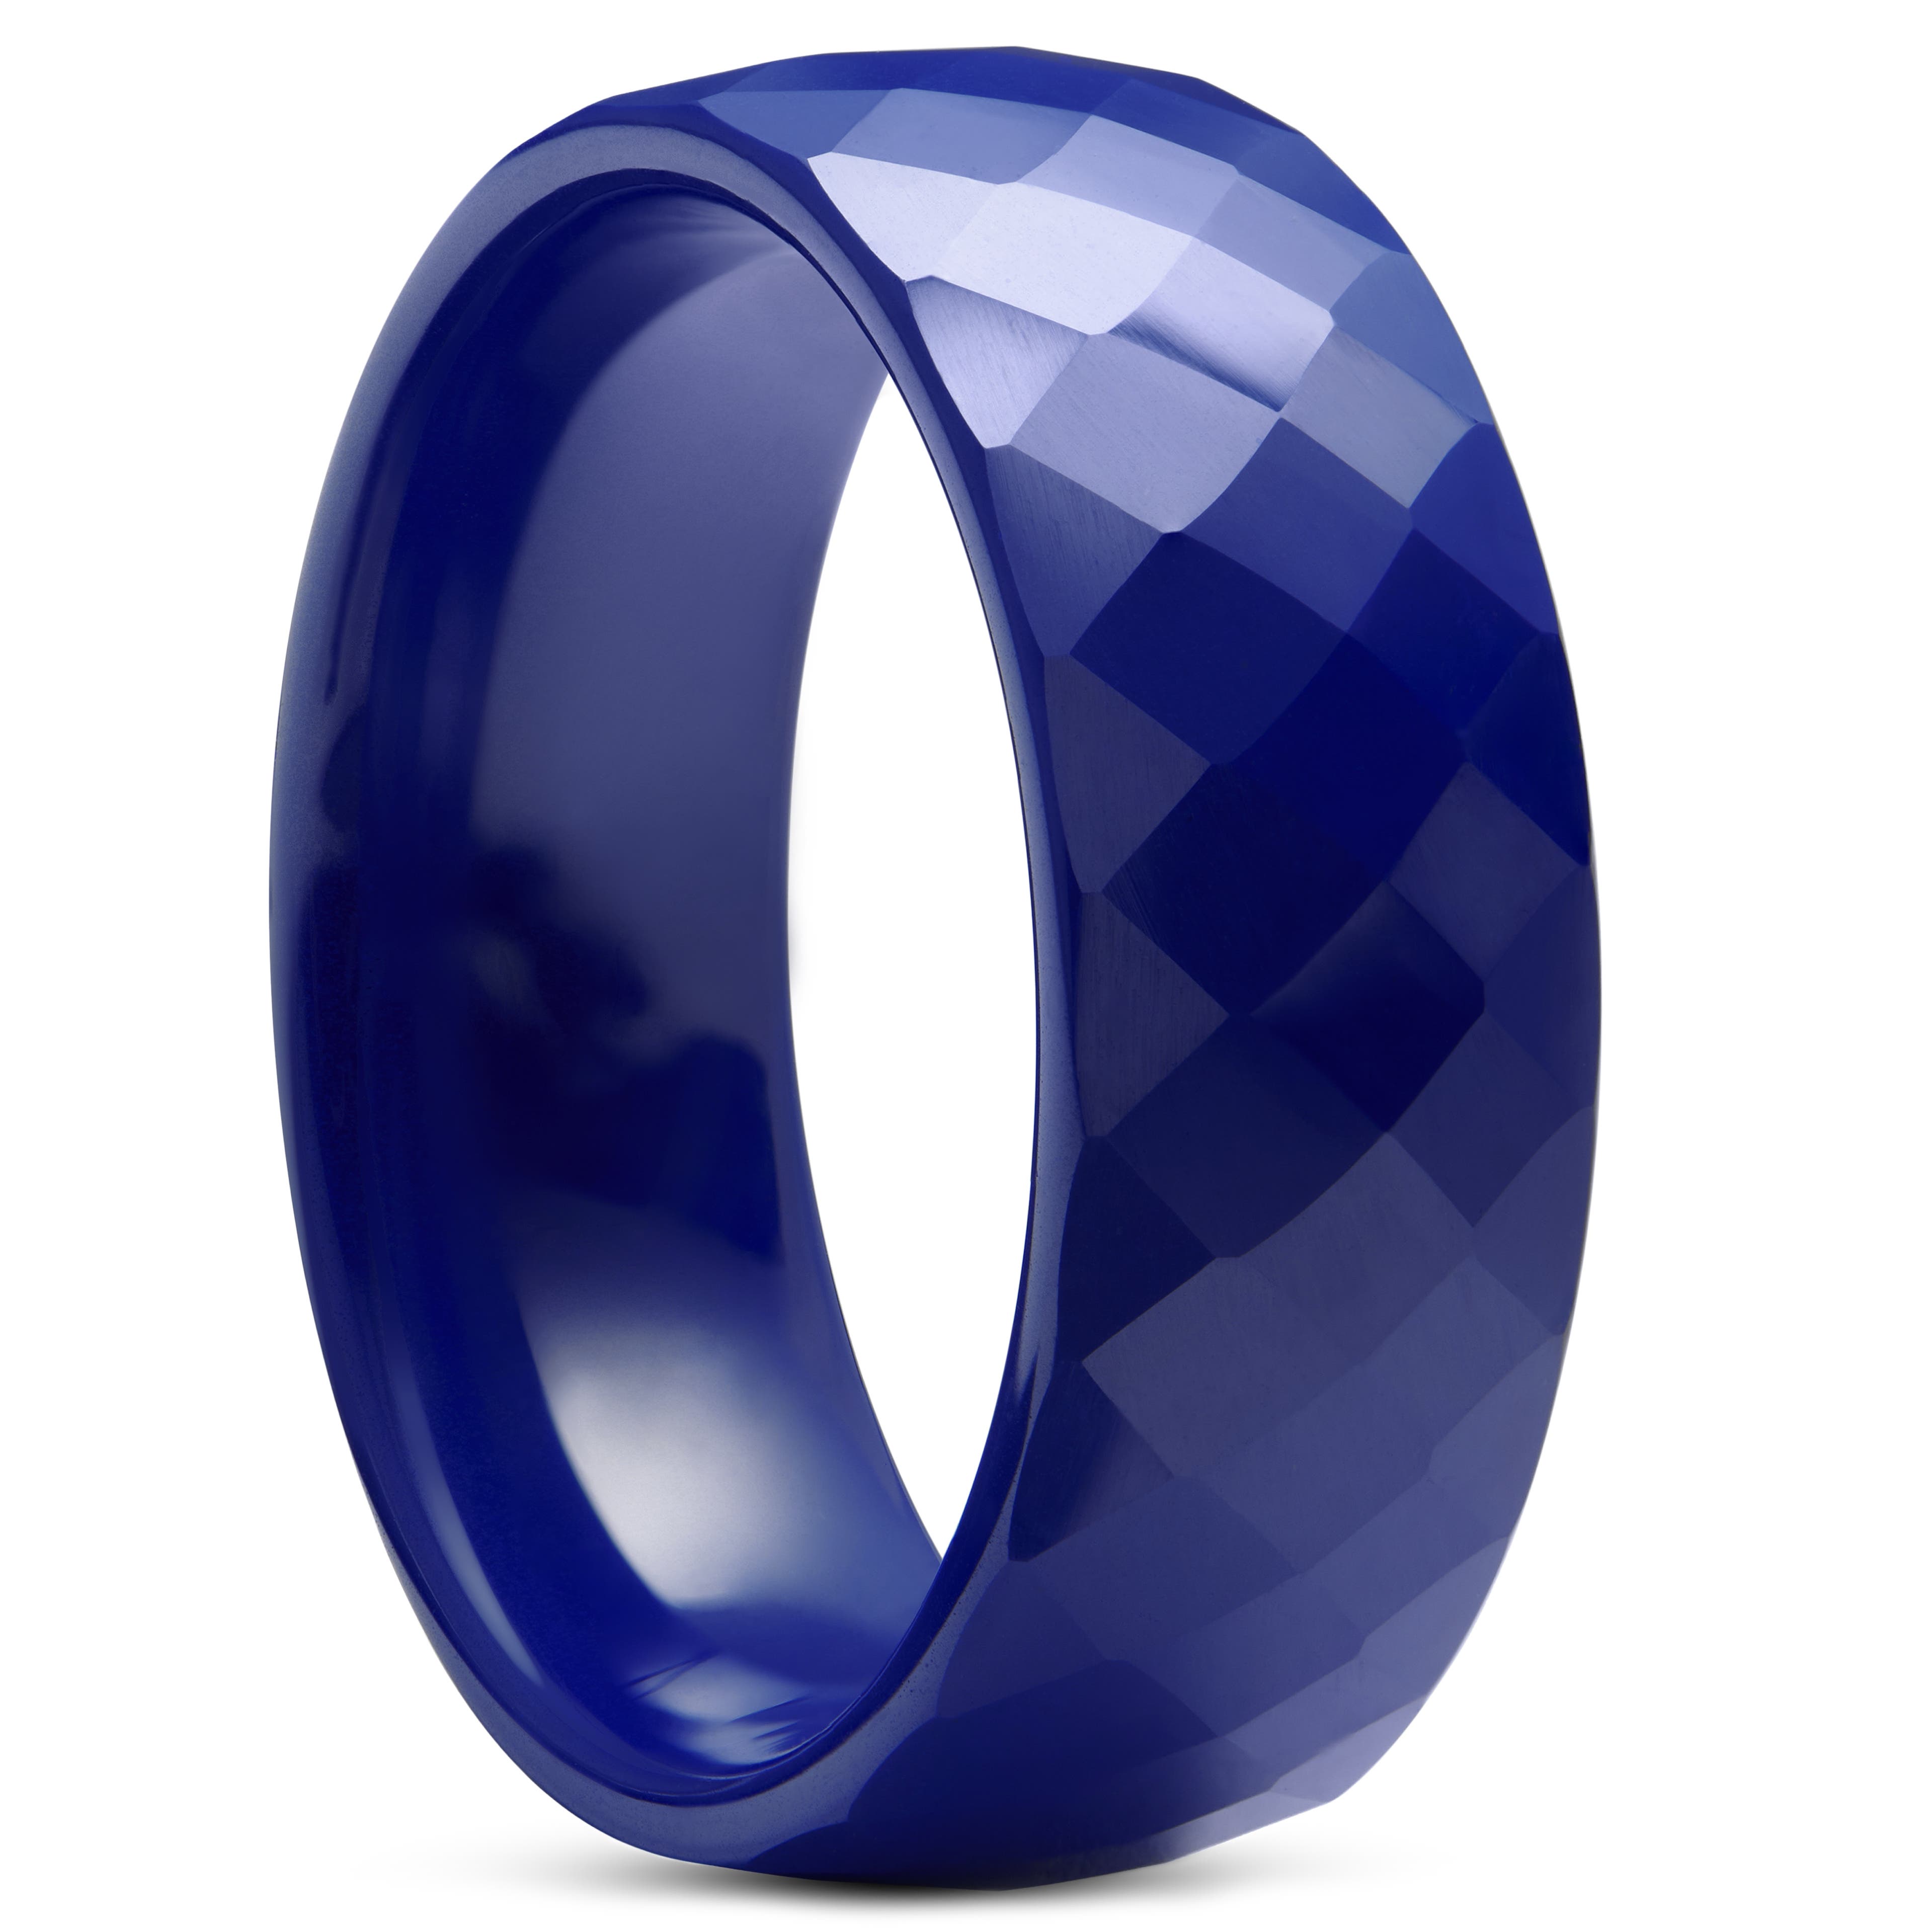 Modrý fazetový keramický prsteň 